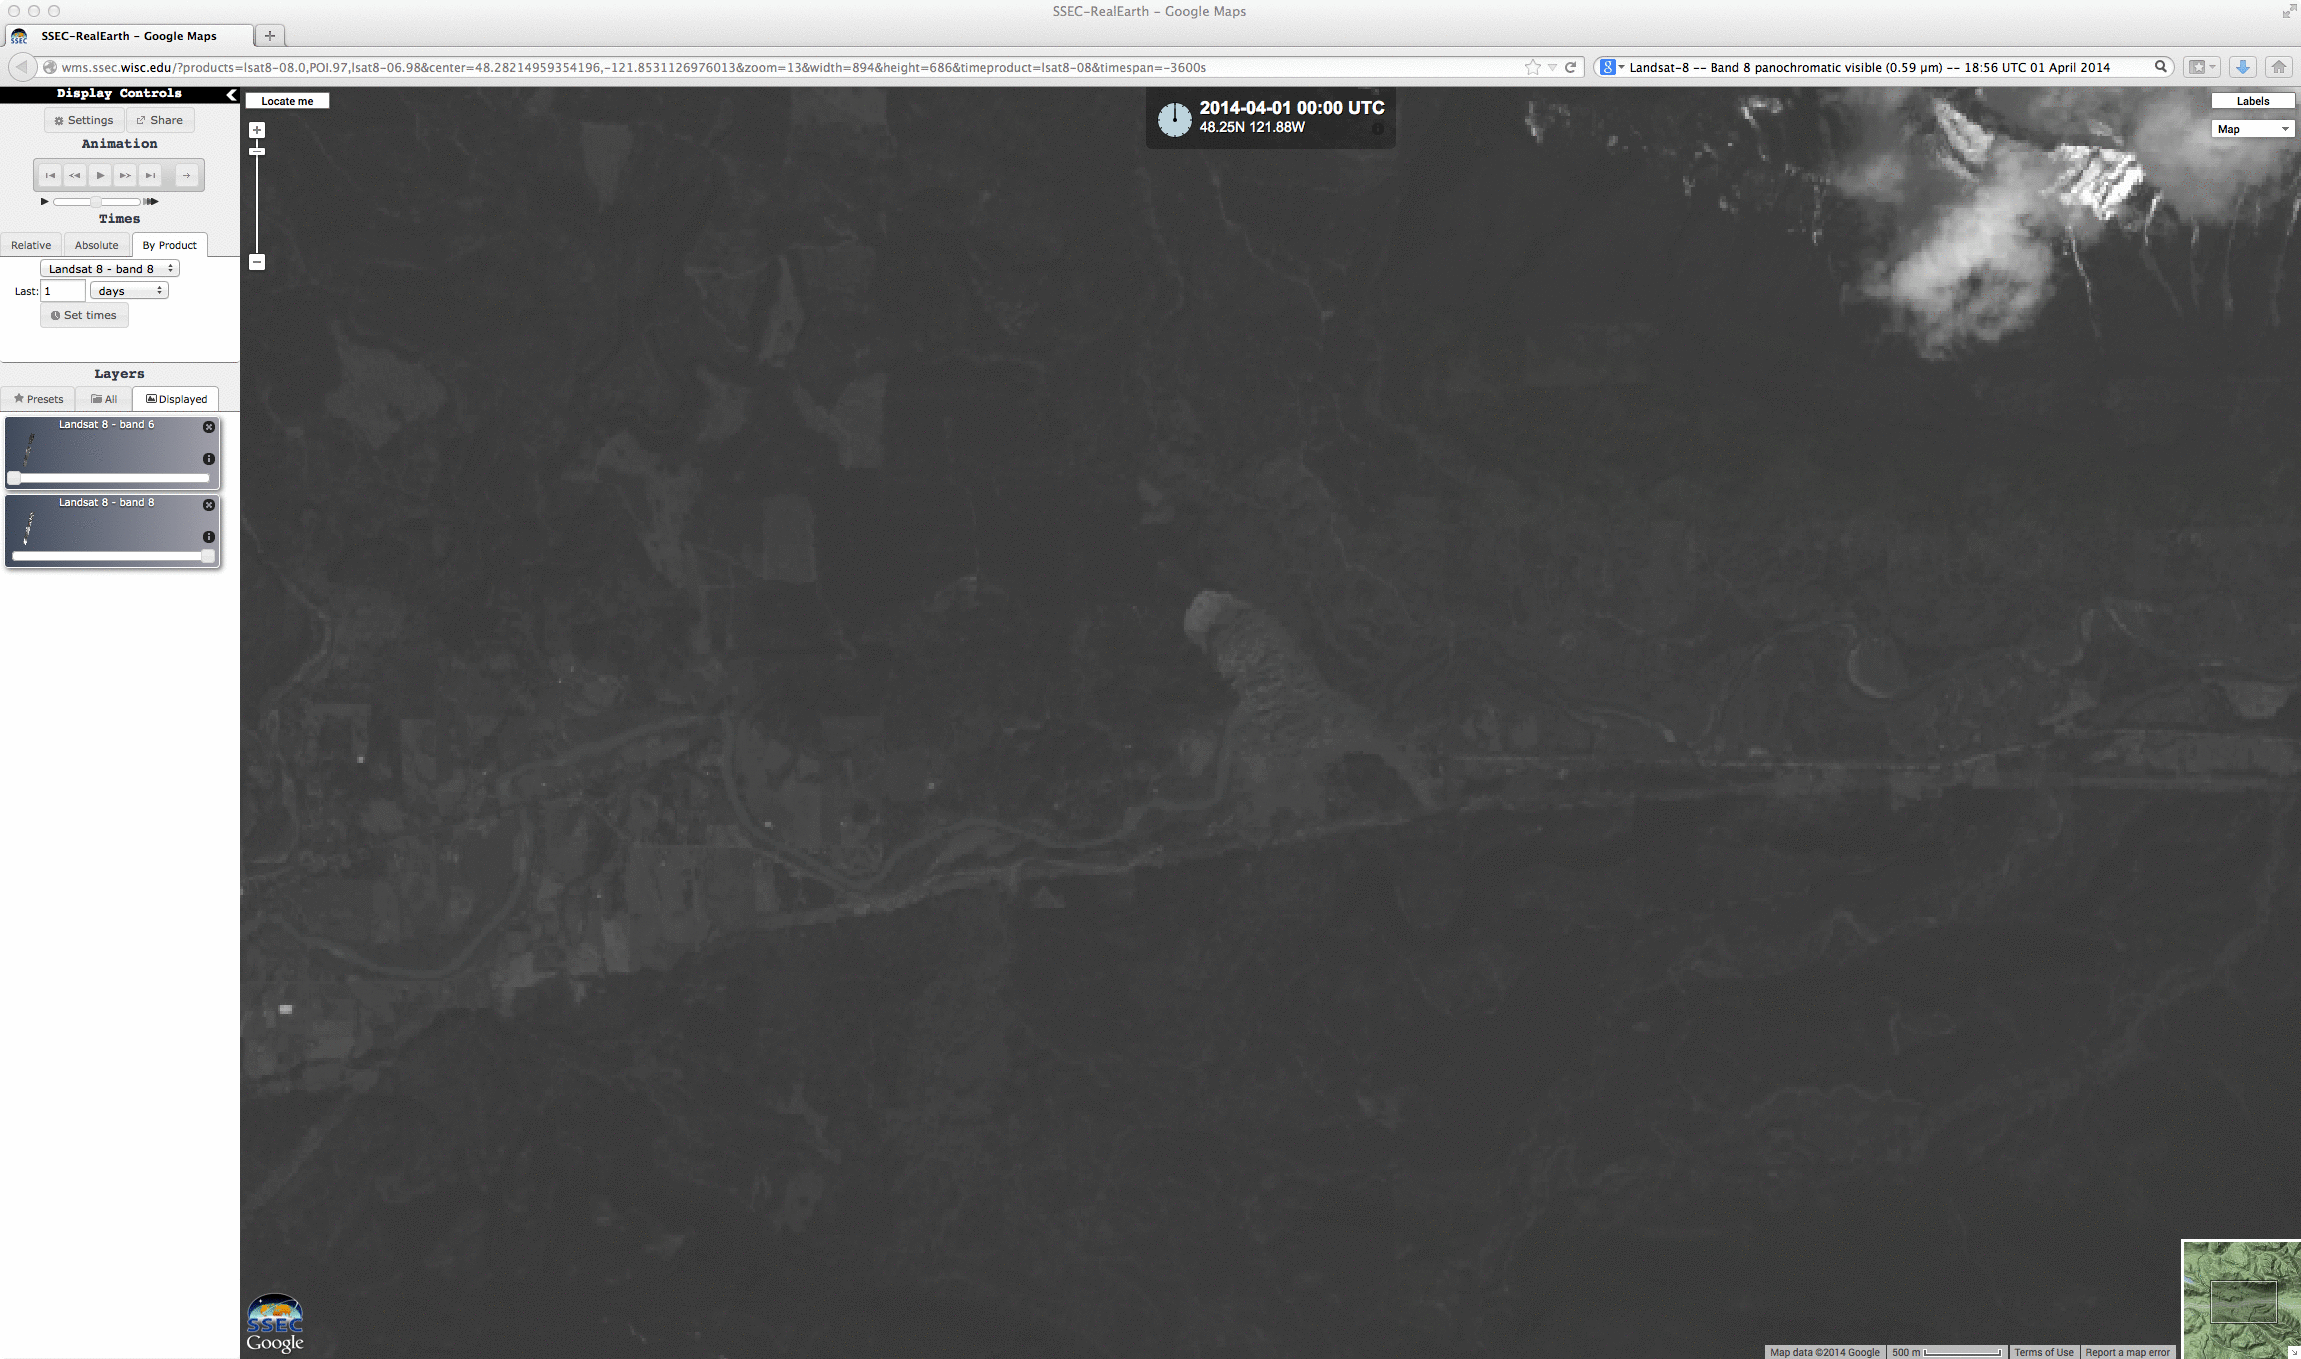 Landsat-8 0.59 Âµm panochromatic visible image on 01 April